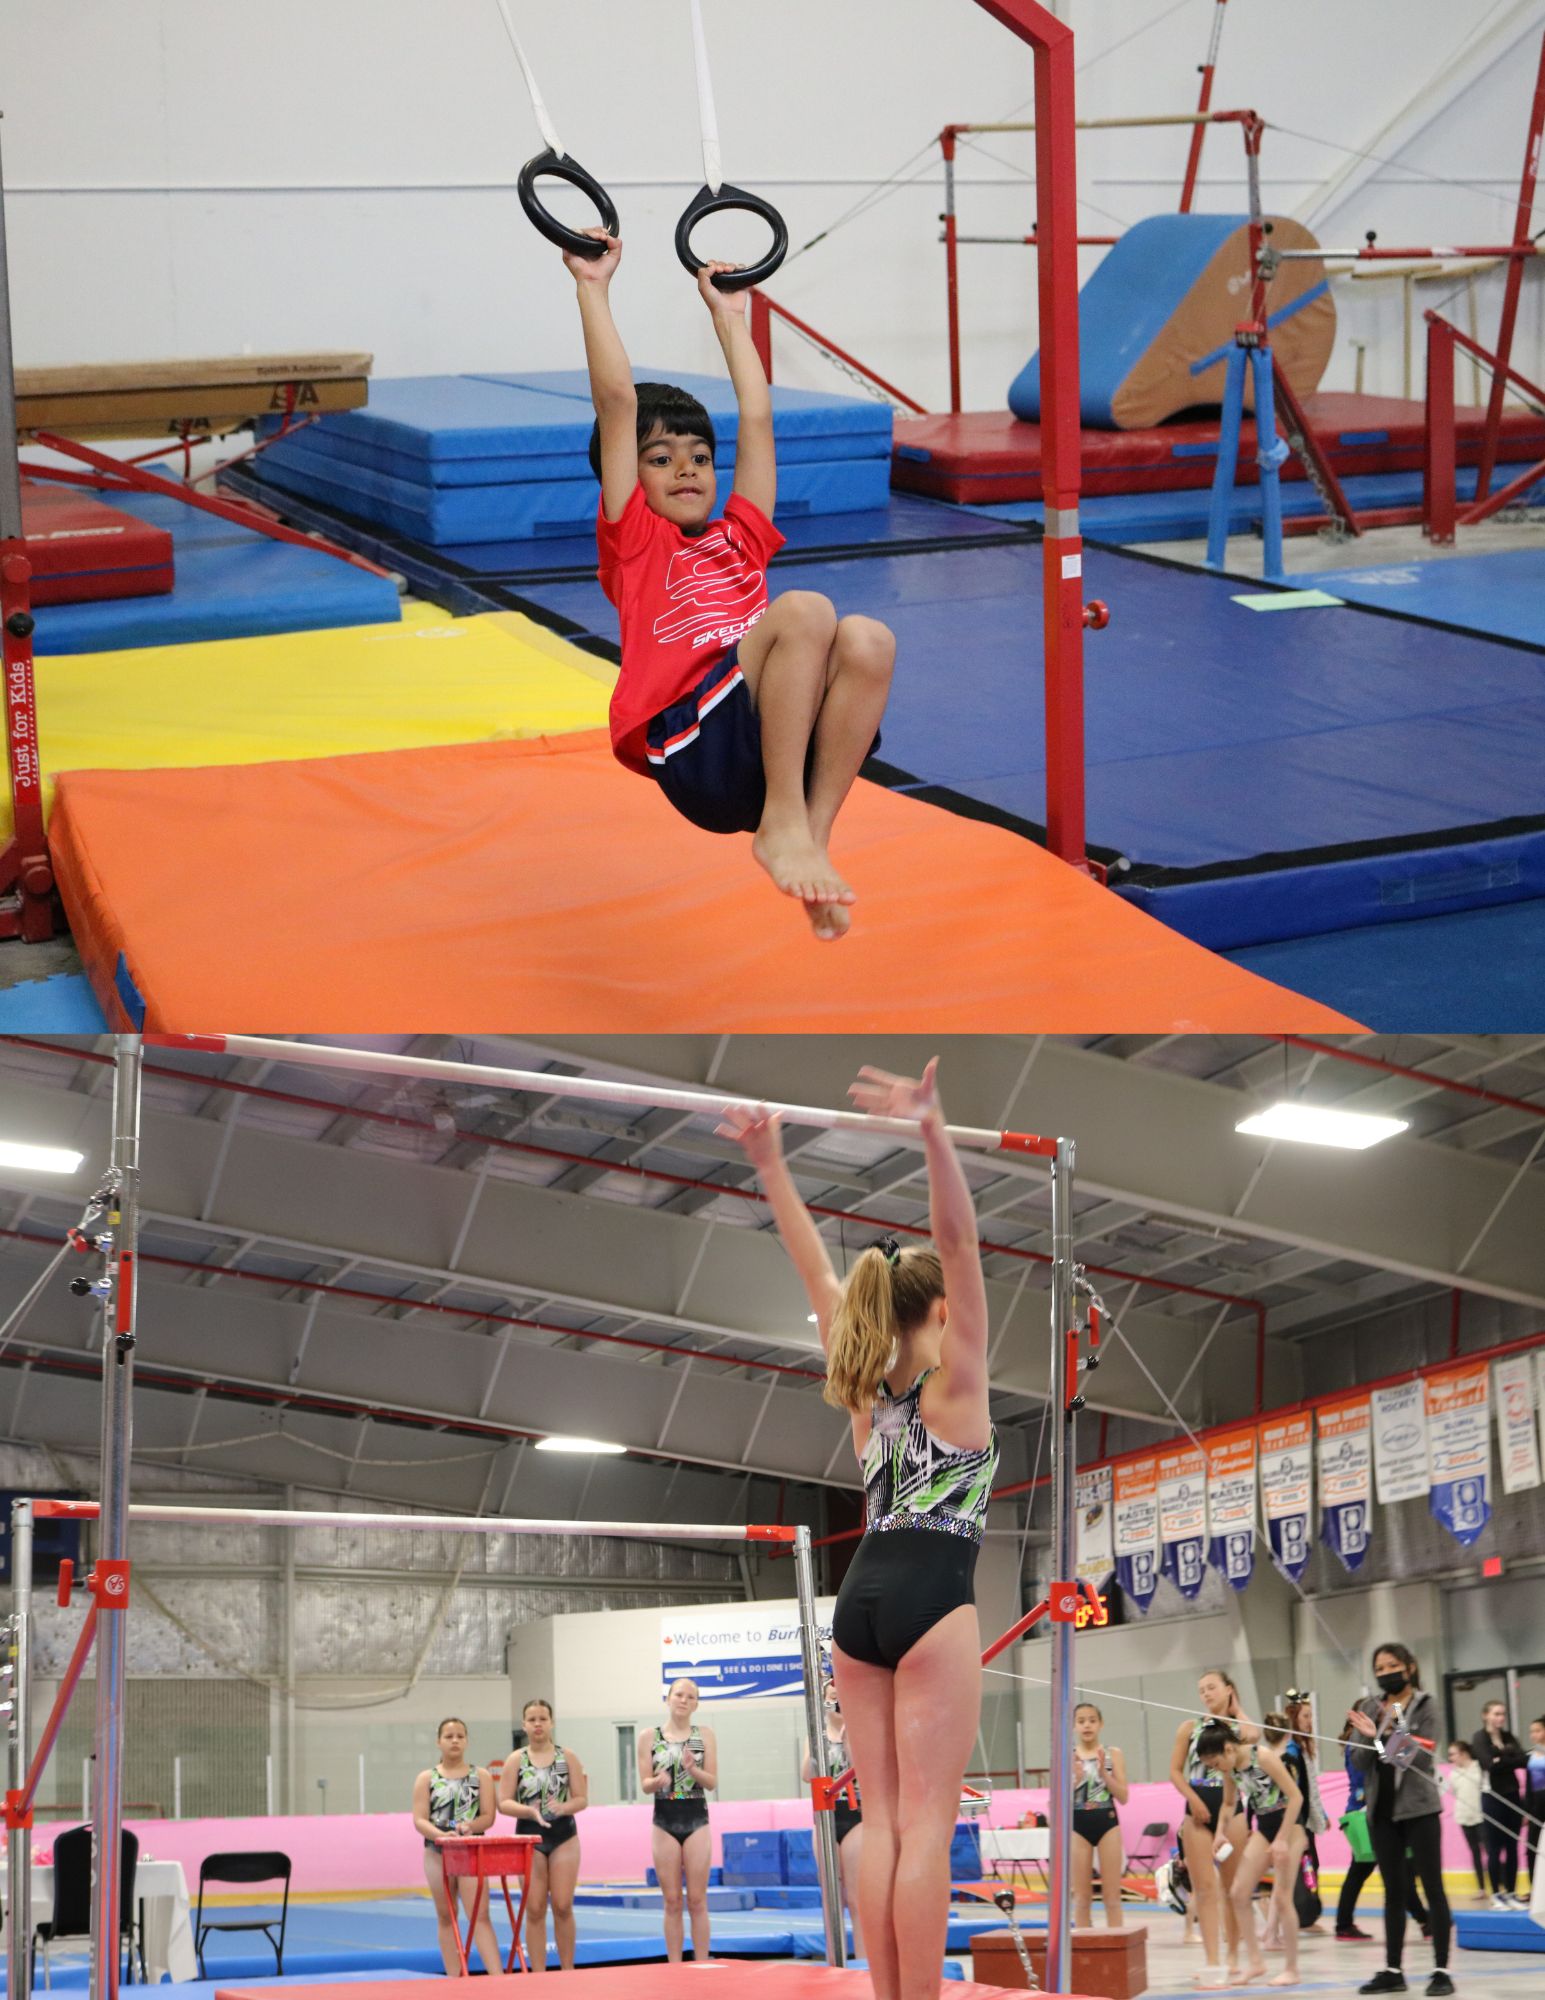 Home - Burlington Gymnastics Club